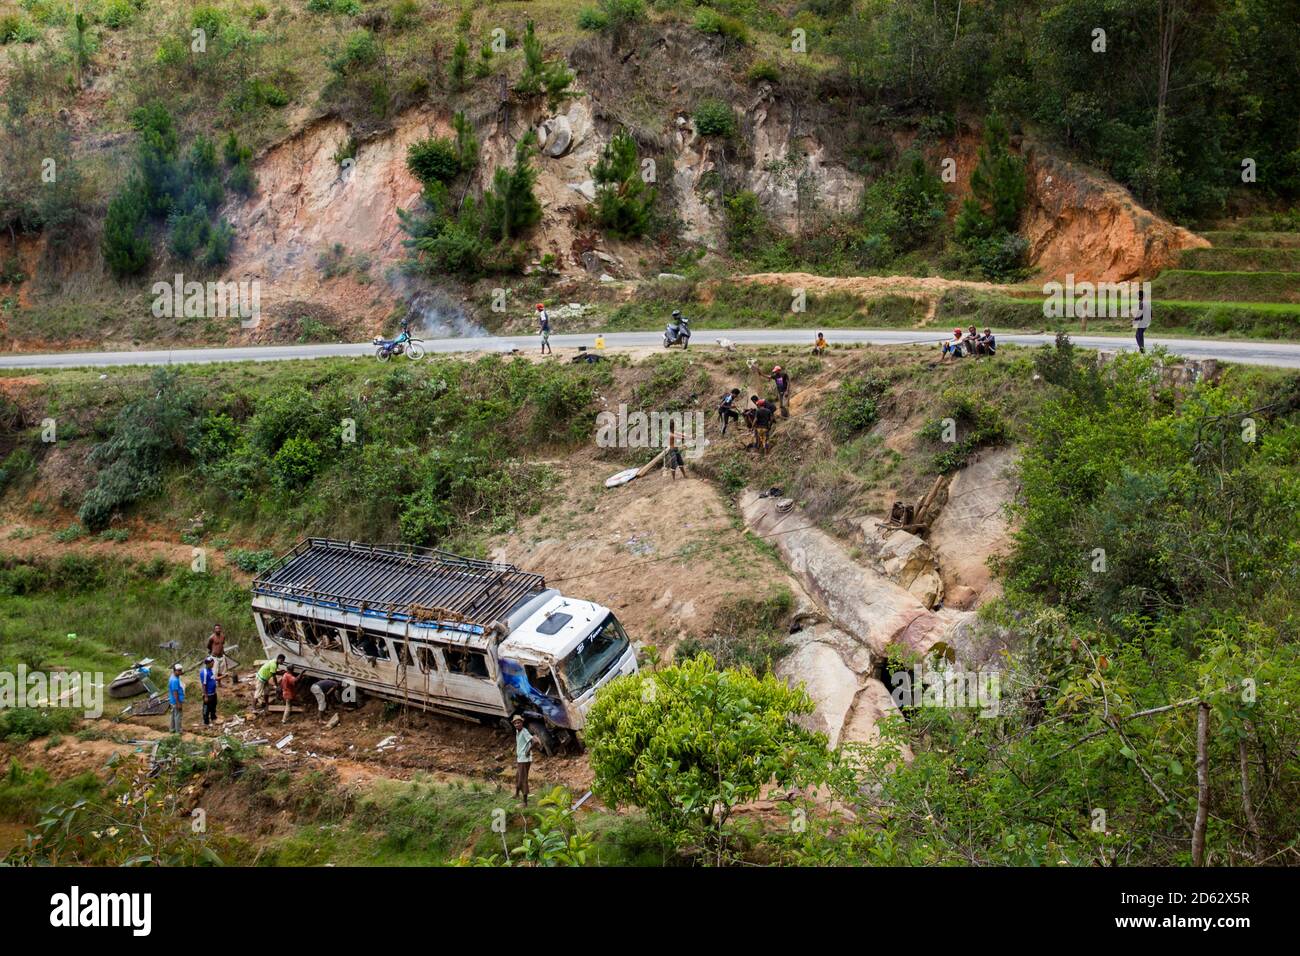 Incidente: Autobus bianco schiantato dopo il tentativo di rapina da parte di banditi malgasci e gruppo di persone che aiutano e cercano di recuperare l'autobus, Madagascar dicembre 2018 Foto Stock